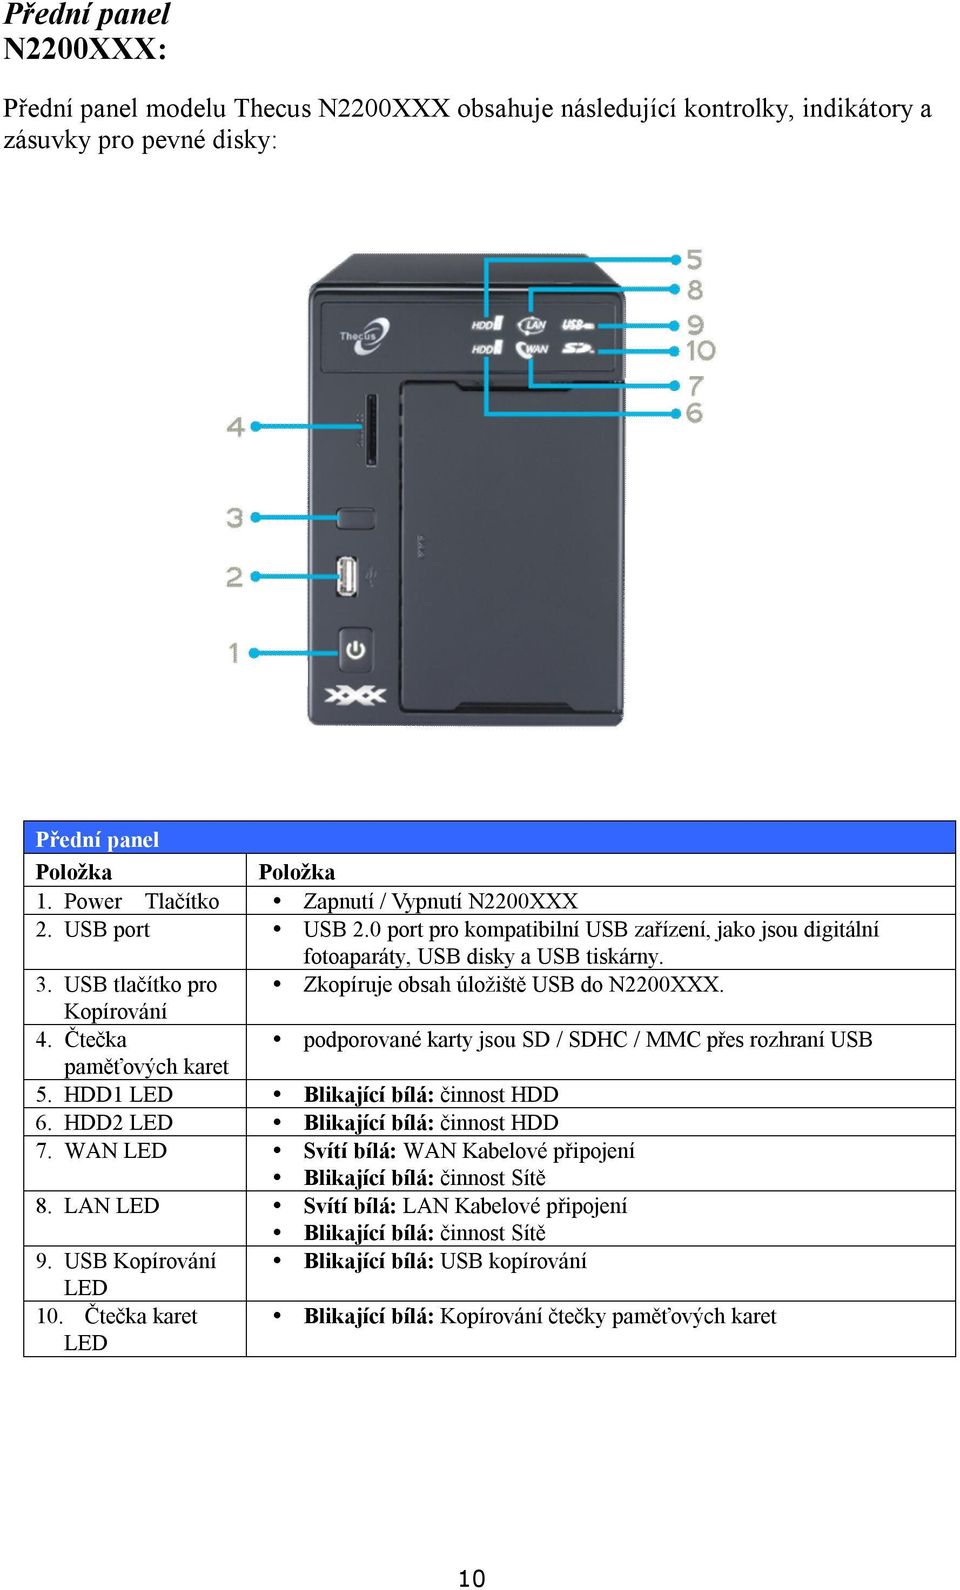 USB tlačítko pro Zkopíruje obsah úložiště USB do N2200XXX. Kopírování 4. Čtečka podporované karty jsou SD / SDHC / MMC přes rozhraní USB paměťových karet 5. HDD1 LED Blikající bílá: činnost HDD 6.